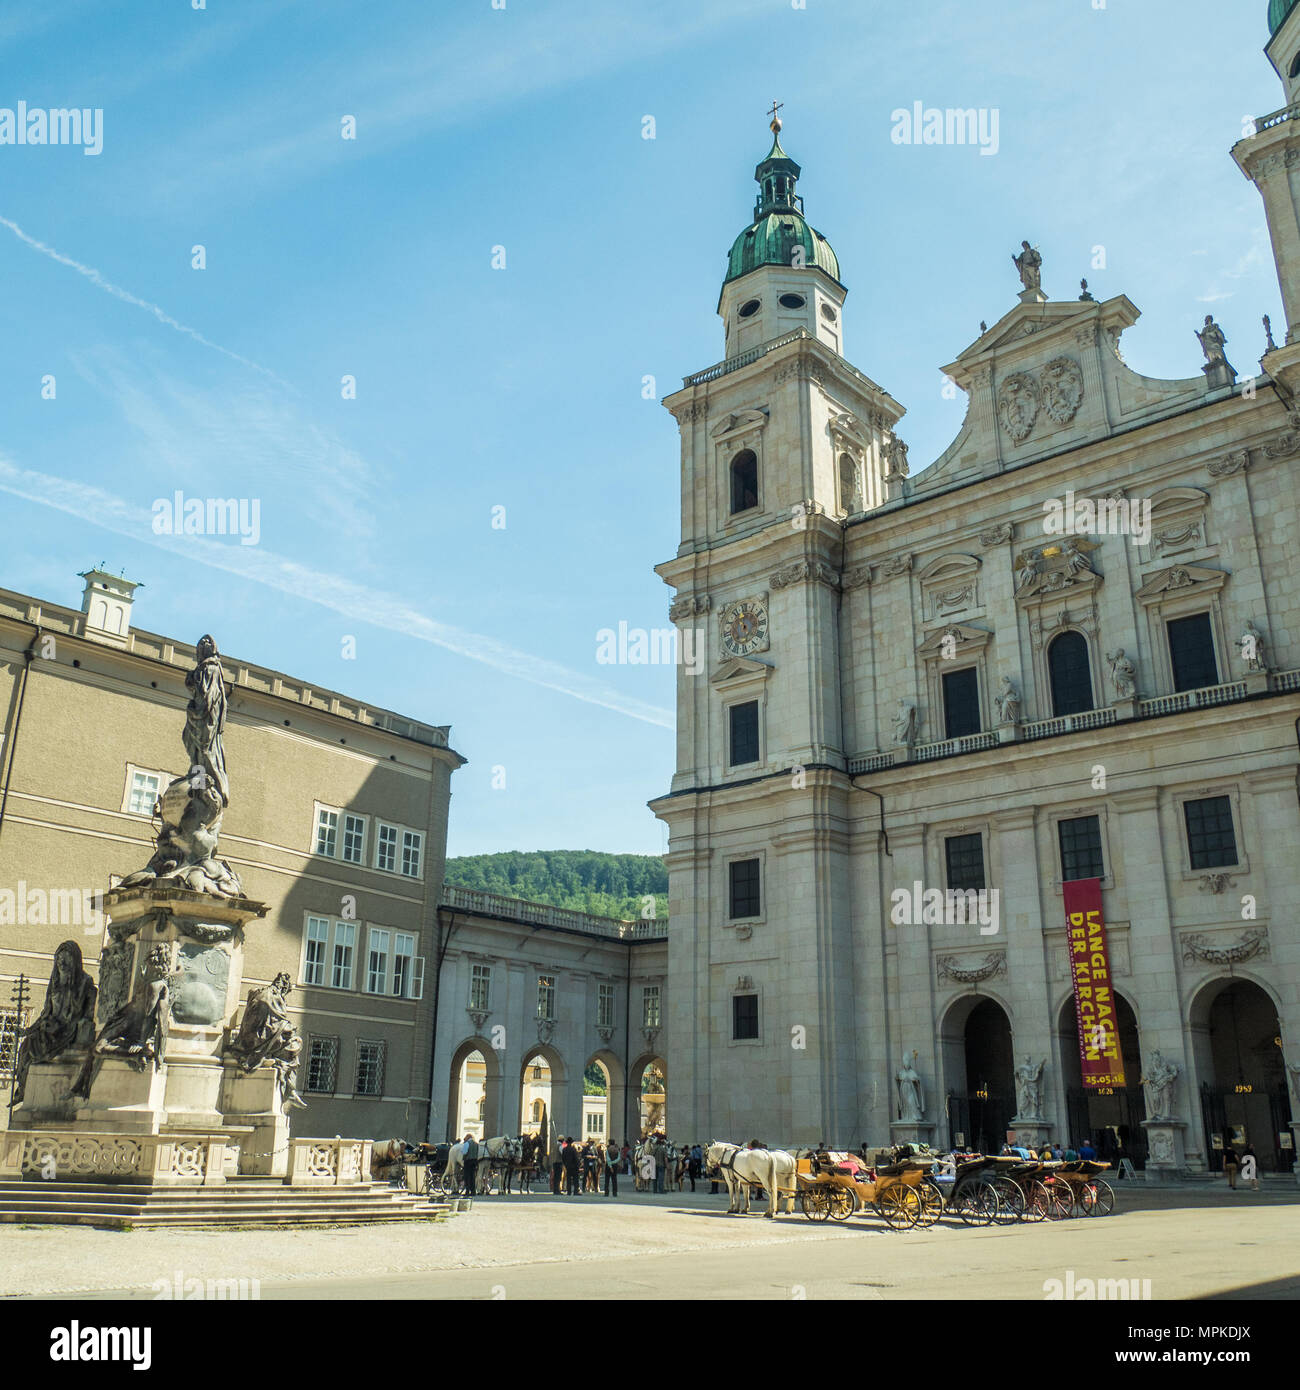 Der barocke Salzburger Dom vom Domplatz aus gesehen. Pferde und Kutschen warten darauf, Touristen für eine Stadtrundfahrt zu nehmen. Stockfoto